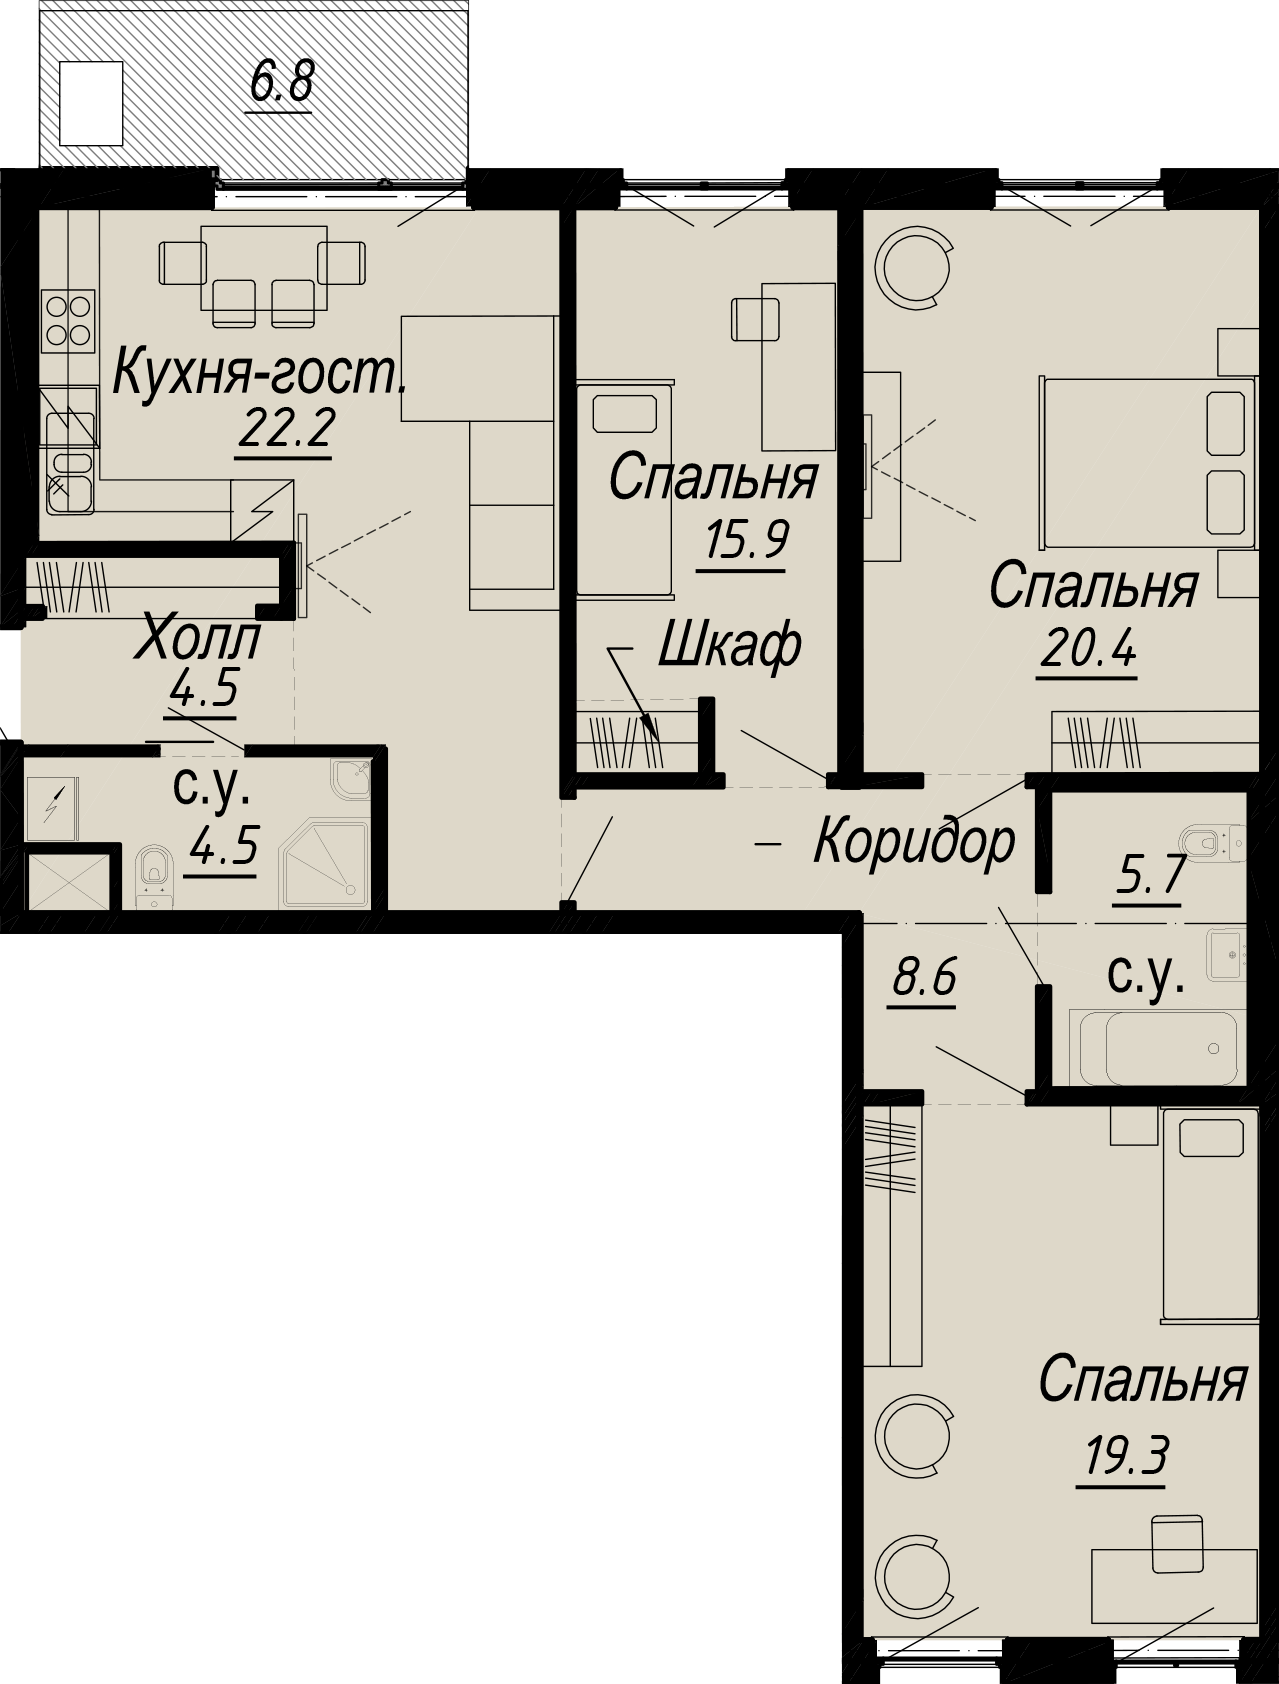 3-комнатная квартира  №4-5 в Meltzer Hall: 106.1 м², этаж 5 - купить в Санкт-Петербурге